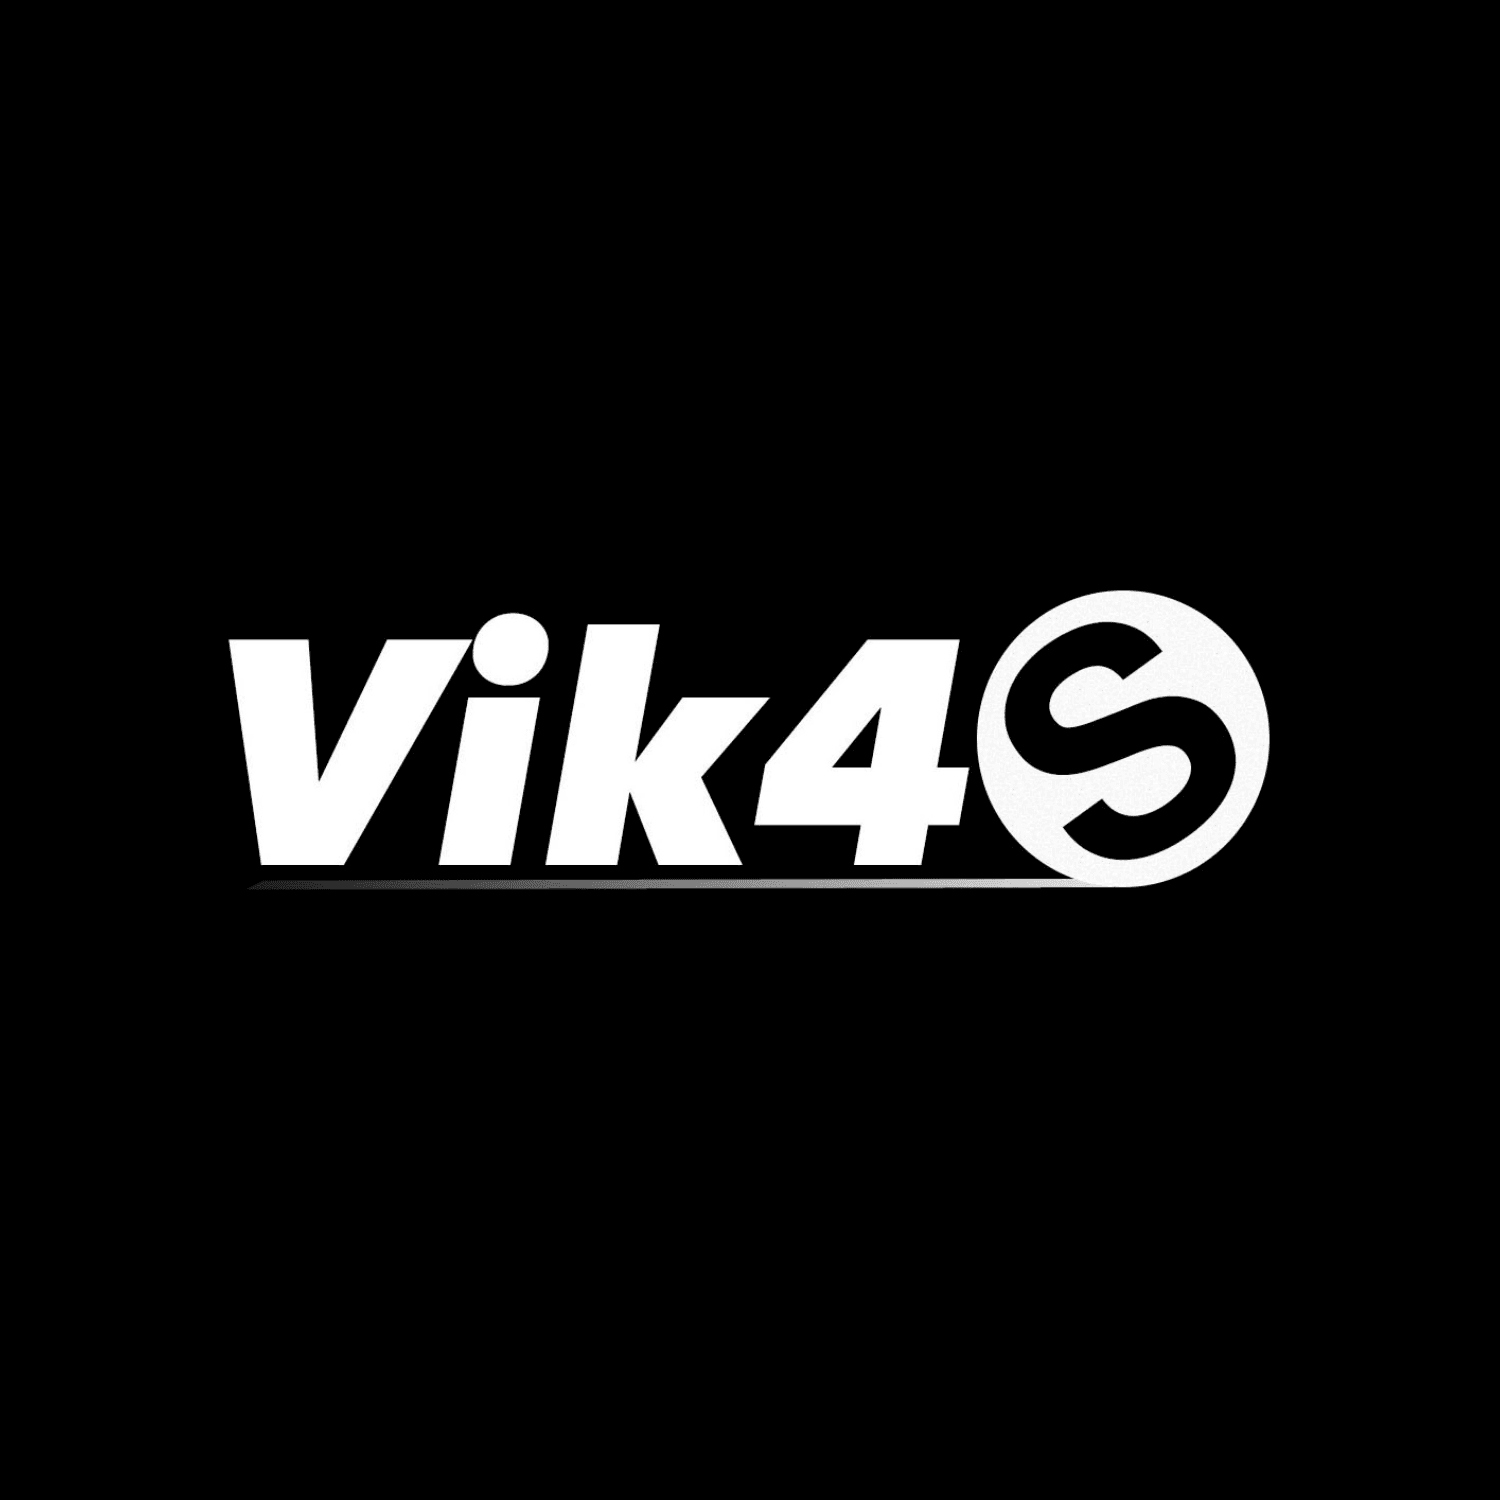 Vik4S